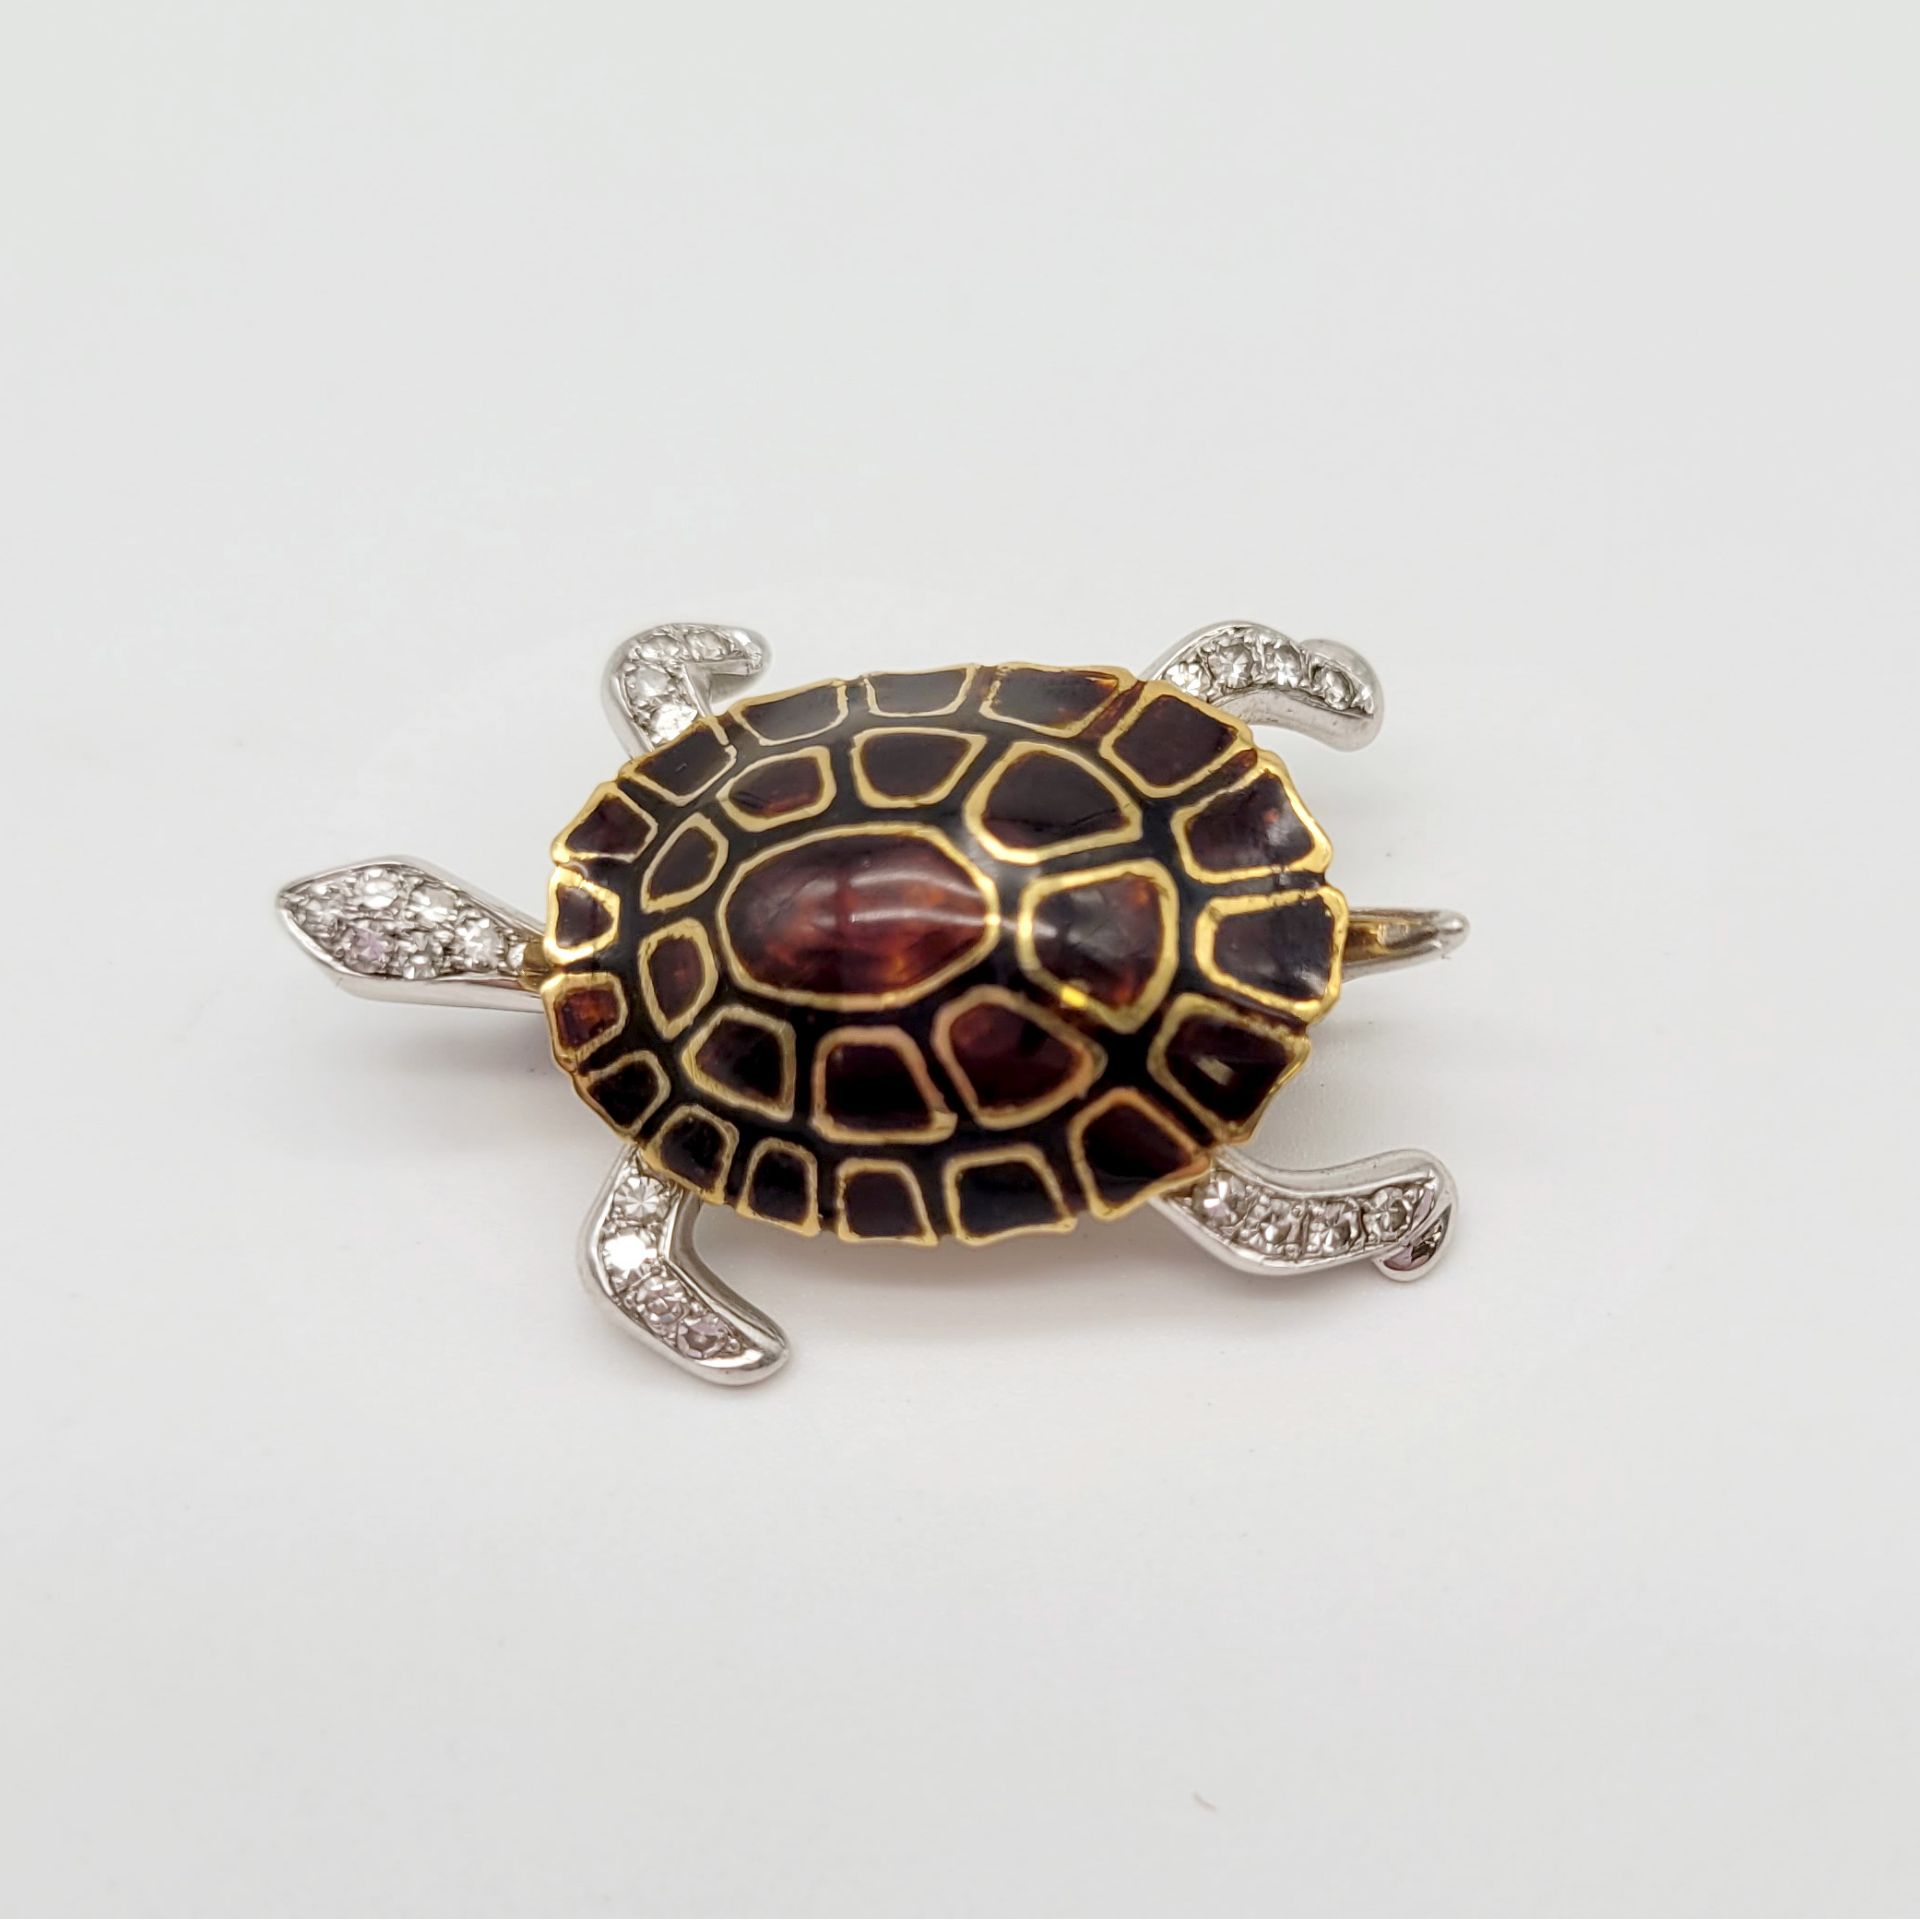 Brosche in Form einer Schildkröte